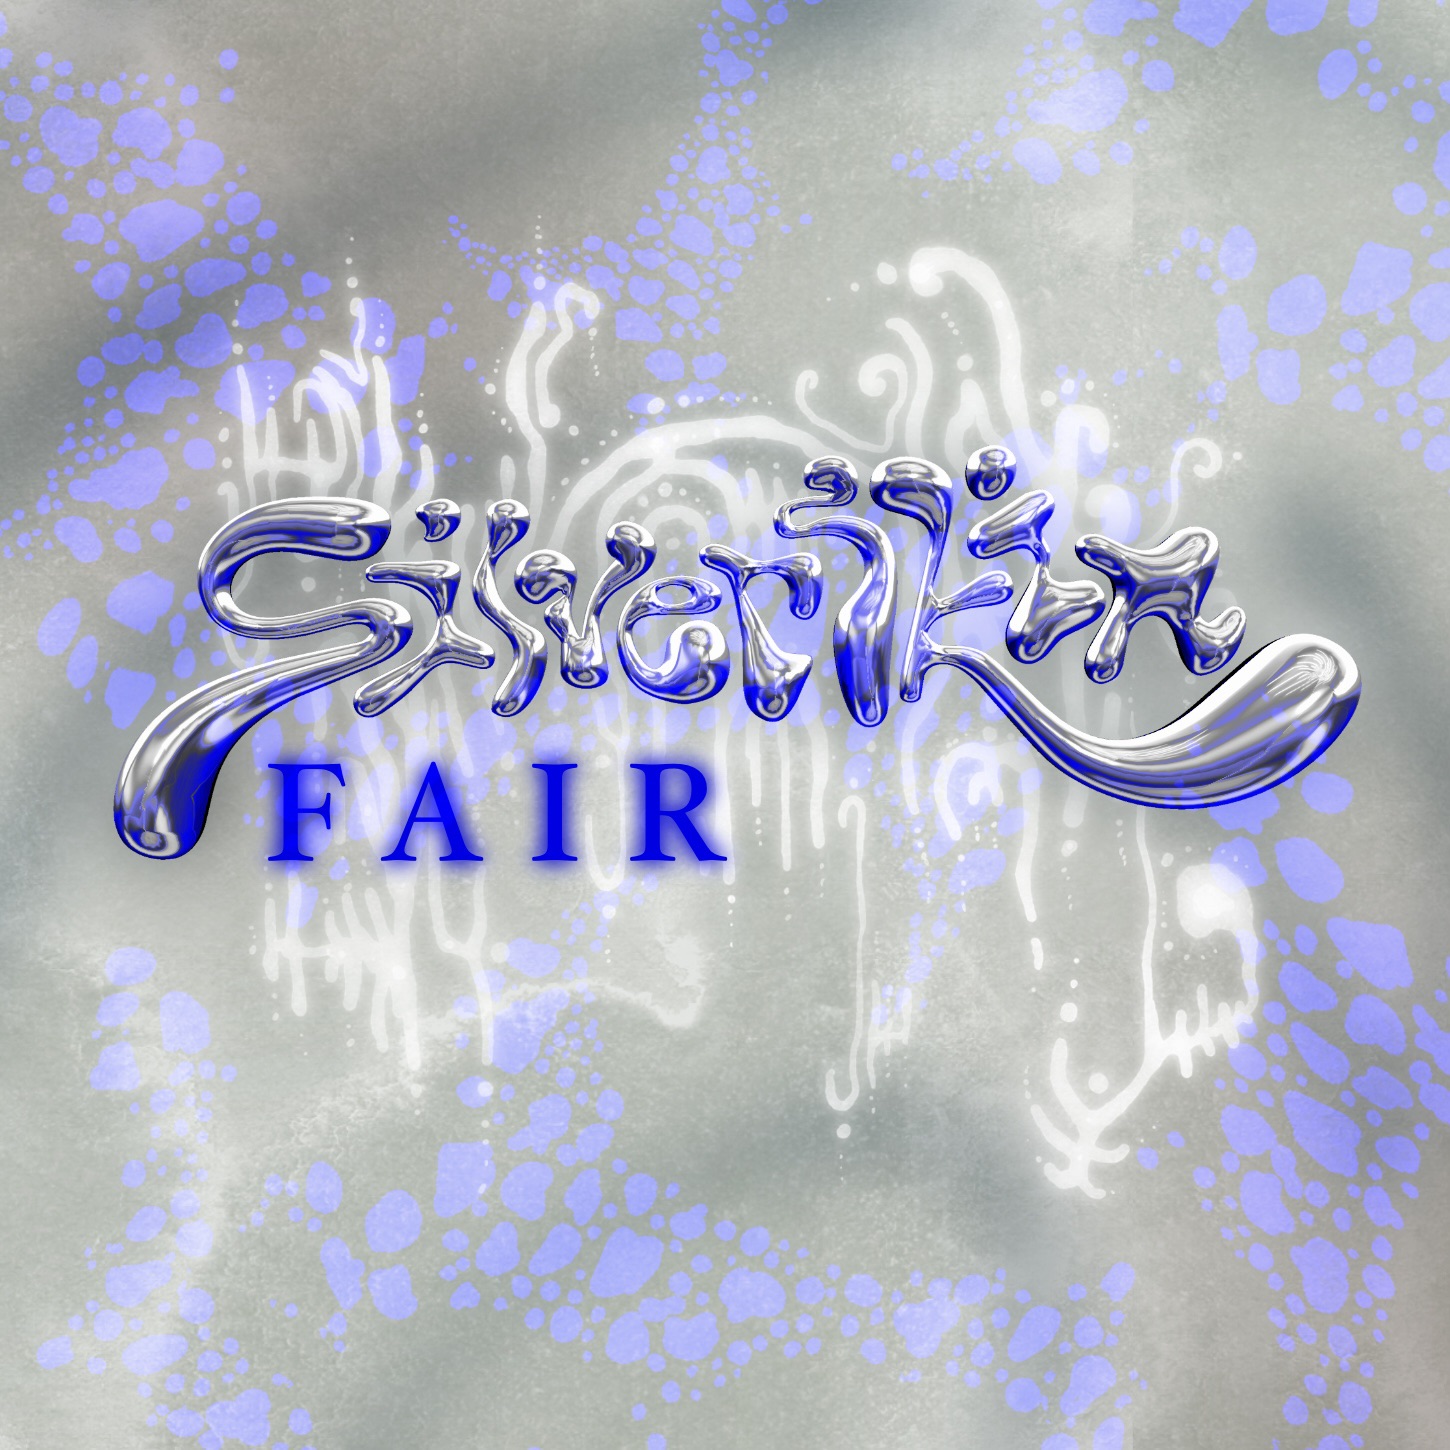 Silverskin Fair